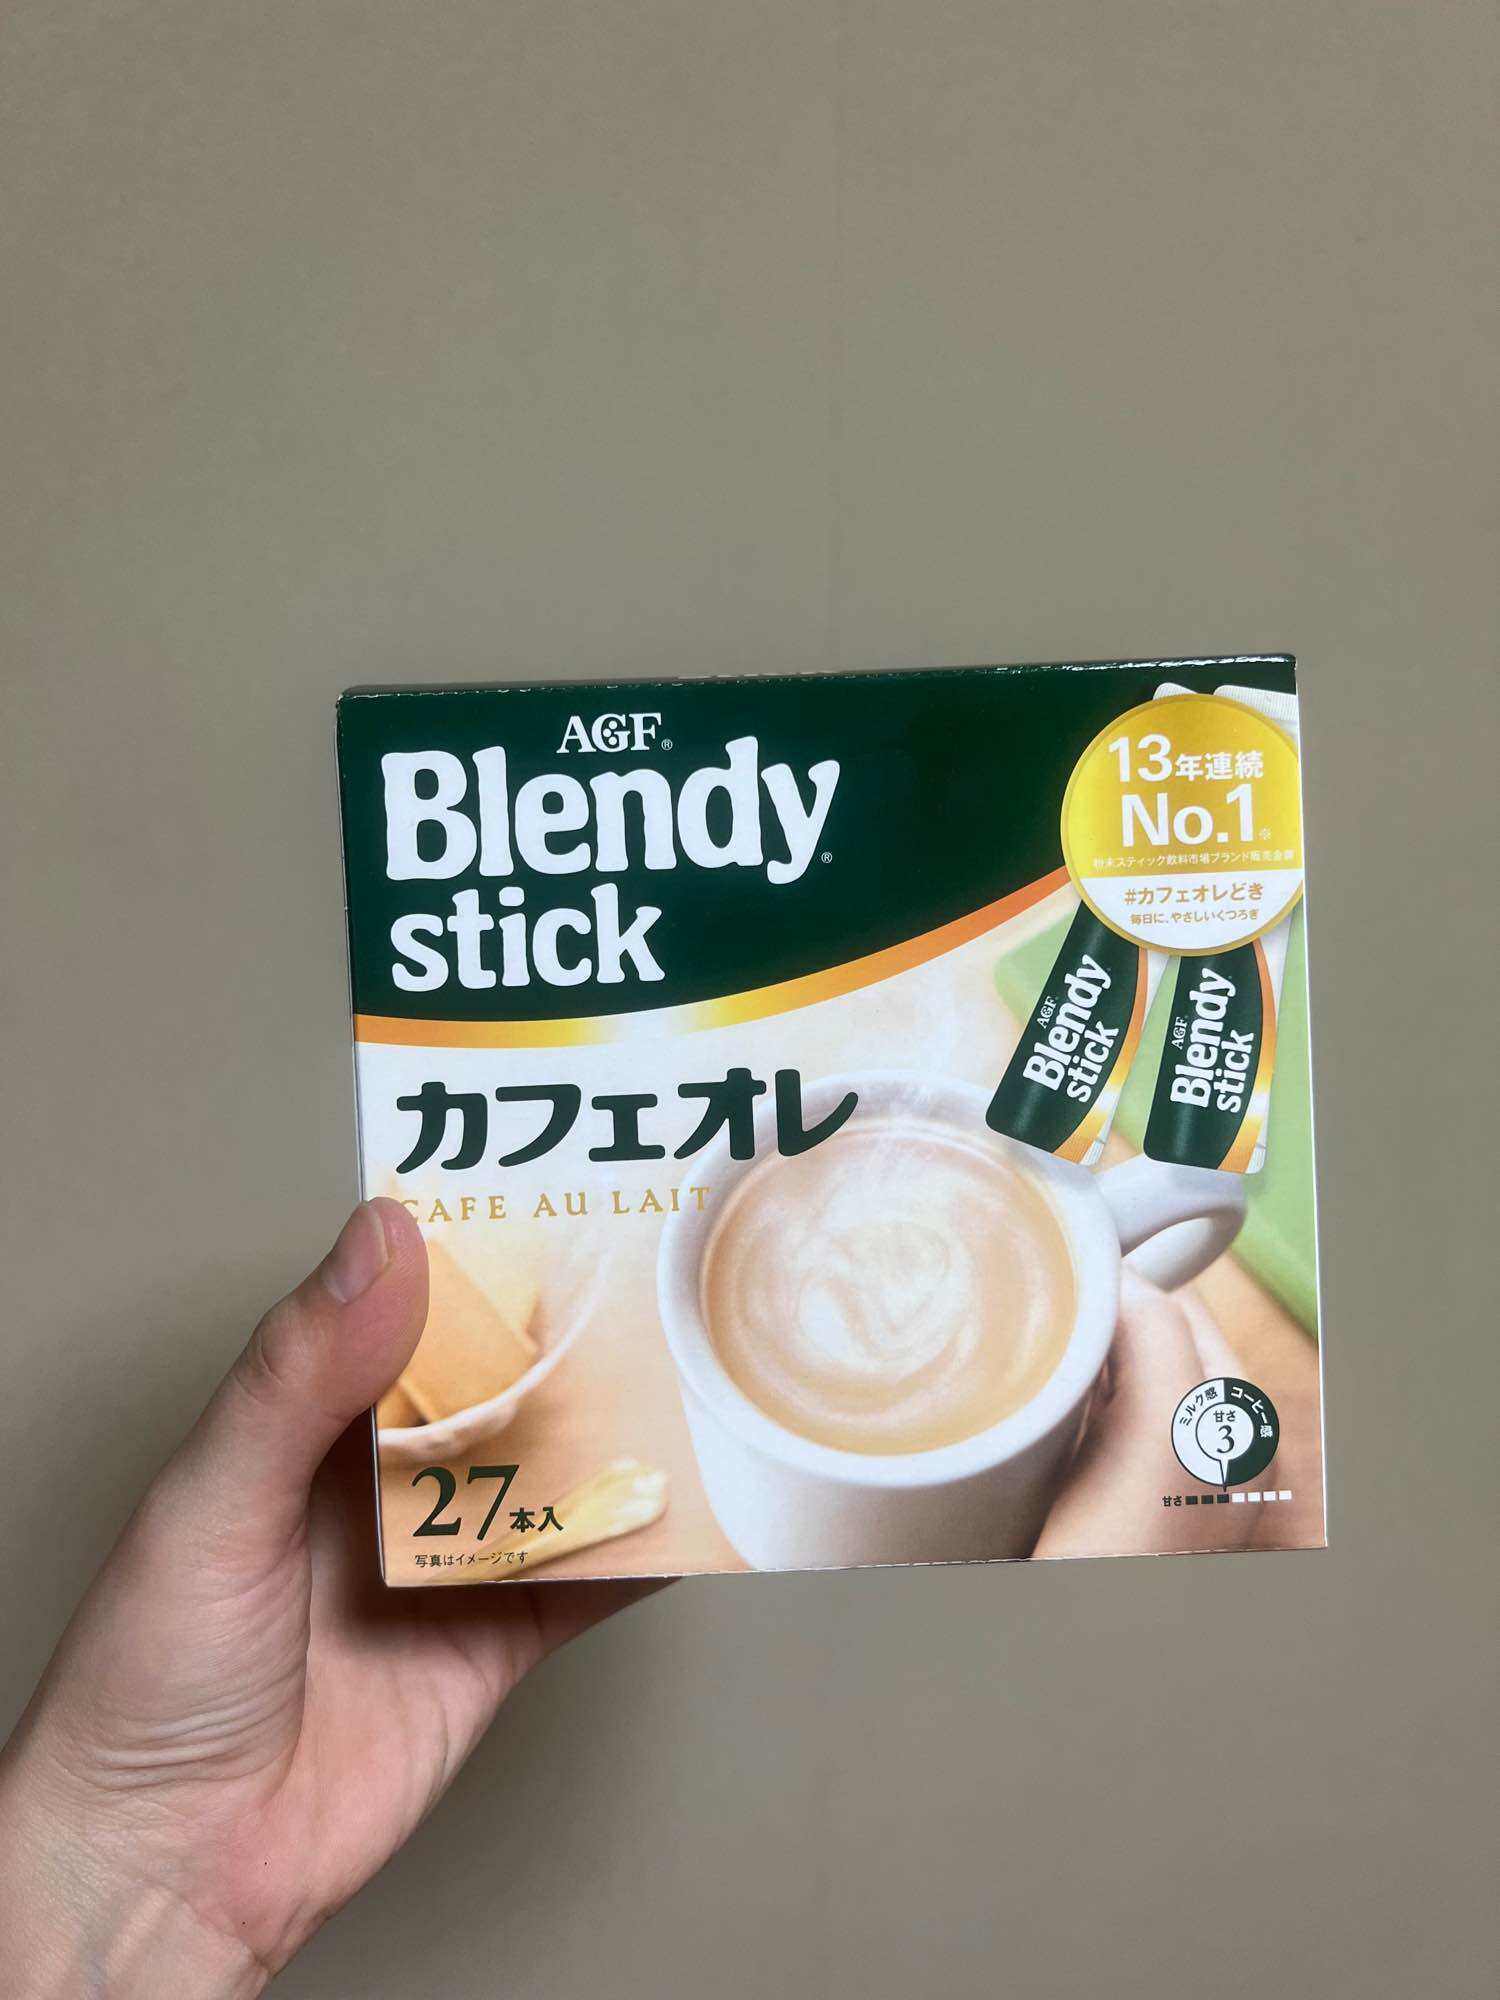 Cà phê Blendy stick AGF